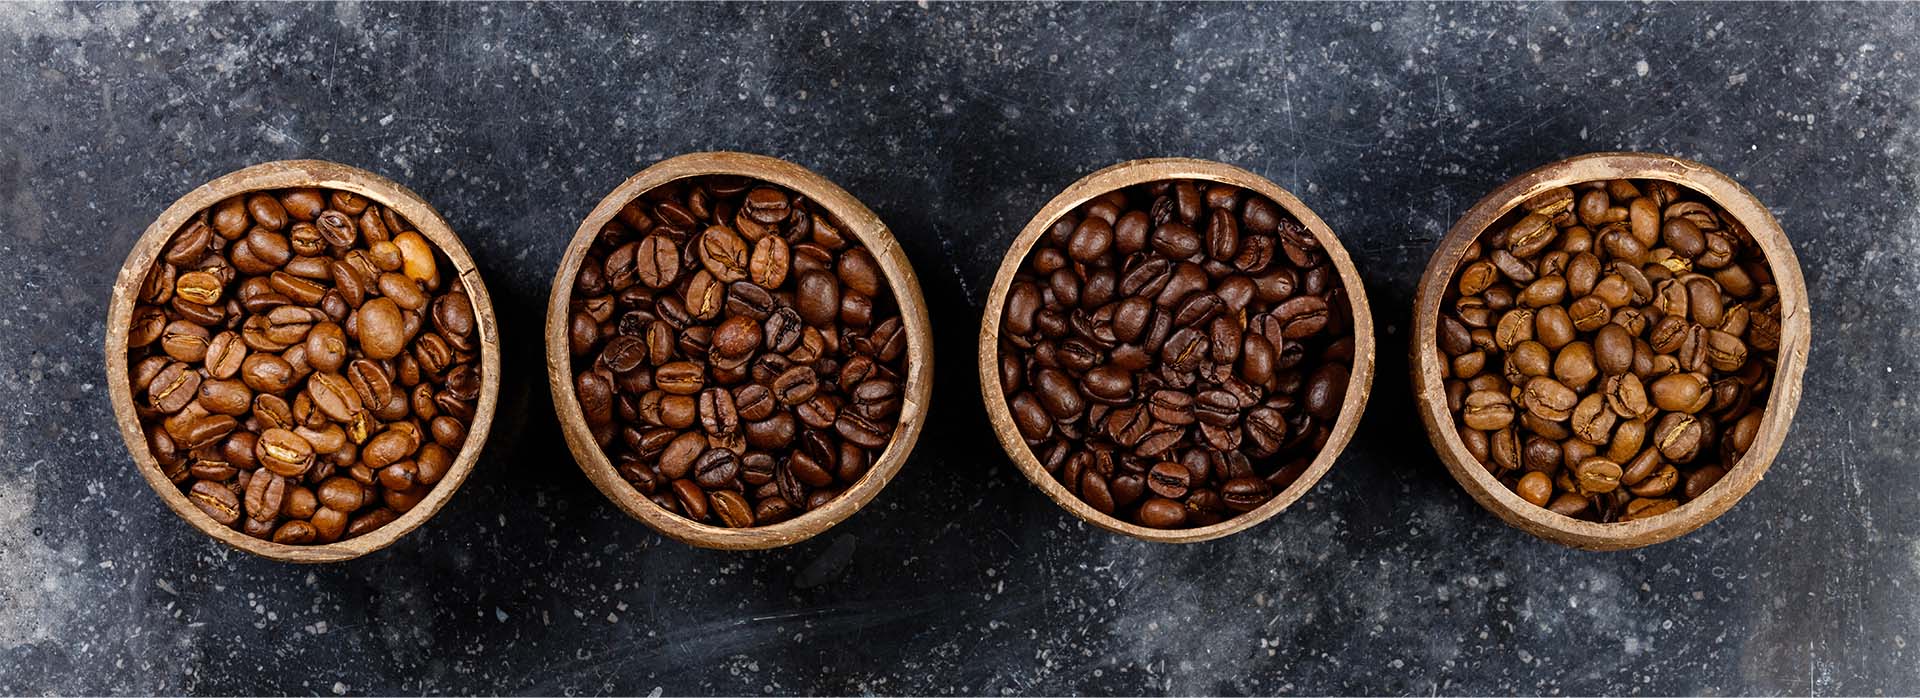 Quatro tipos de grãos de café